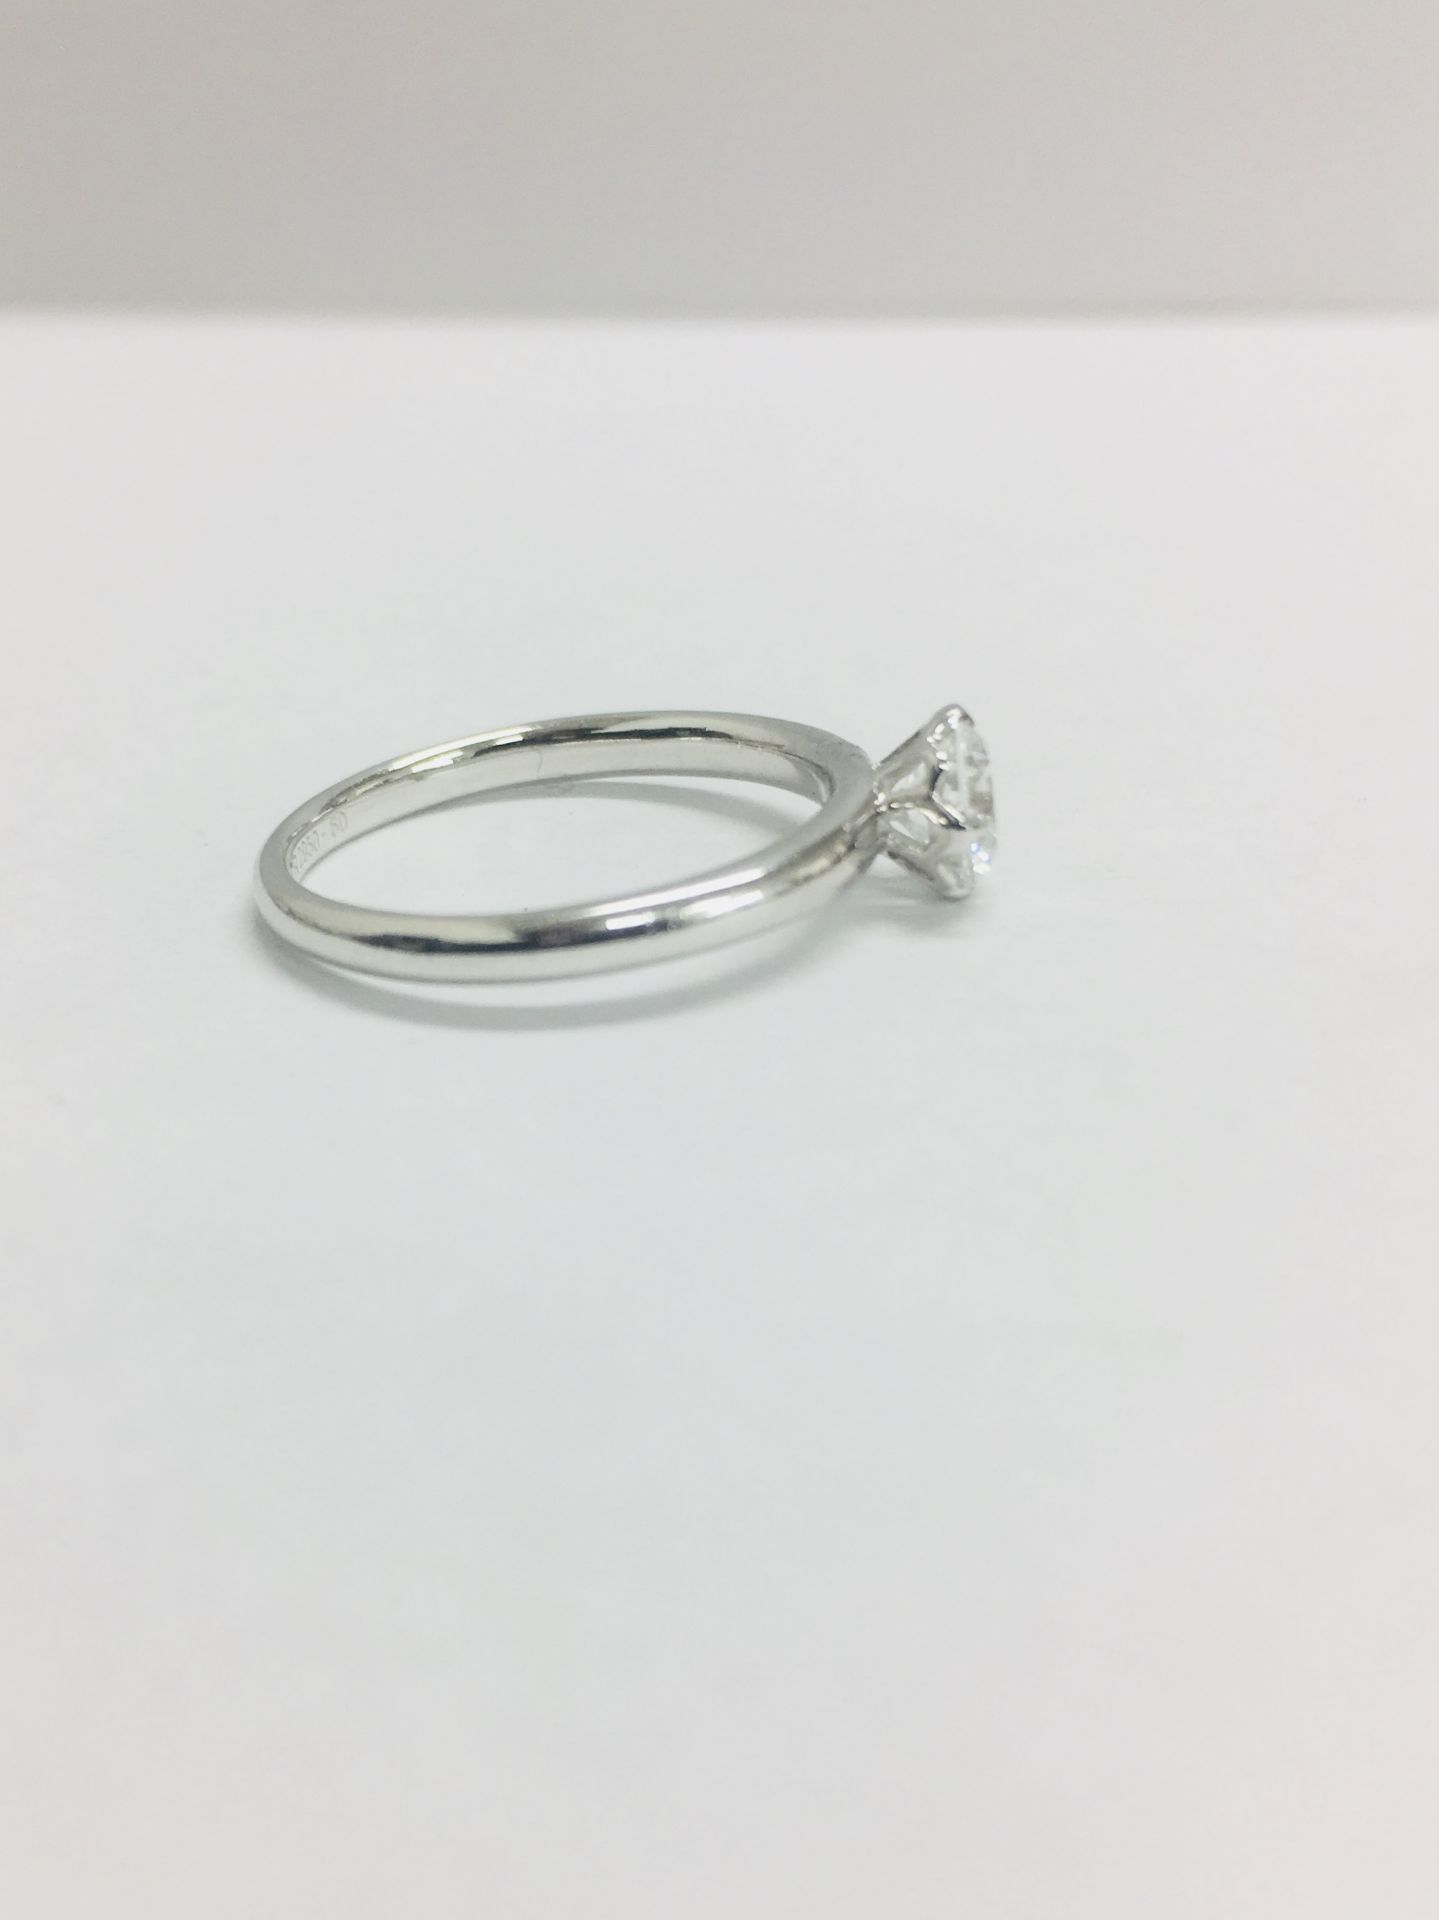 Platinum diamond solitaire ring,0.50ct brillliant cut diamond D colour vs clarity,2.9gms platinum , - Image 7 of 7